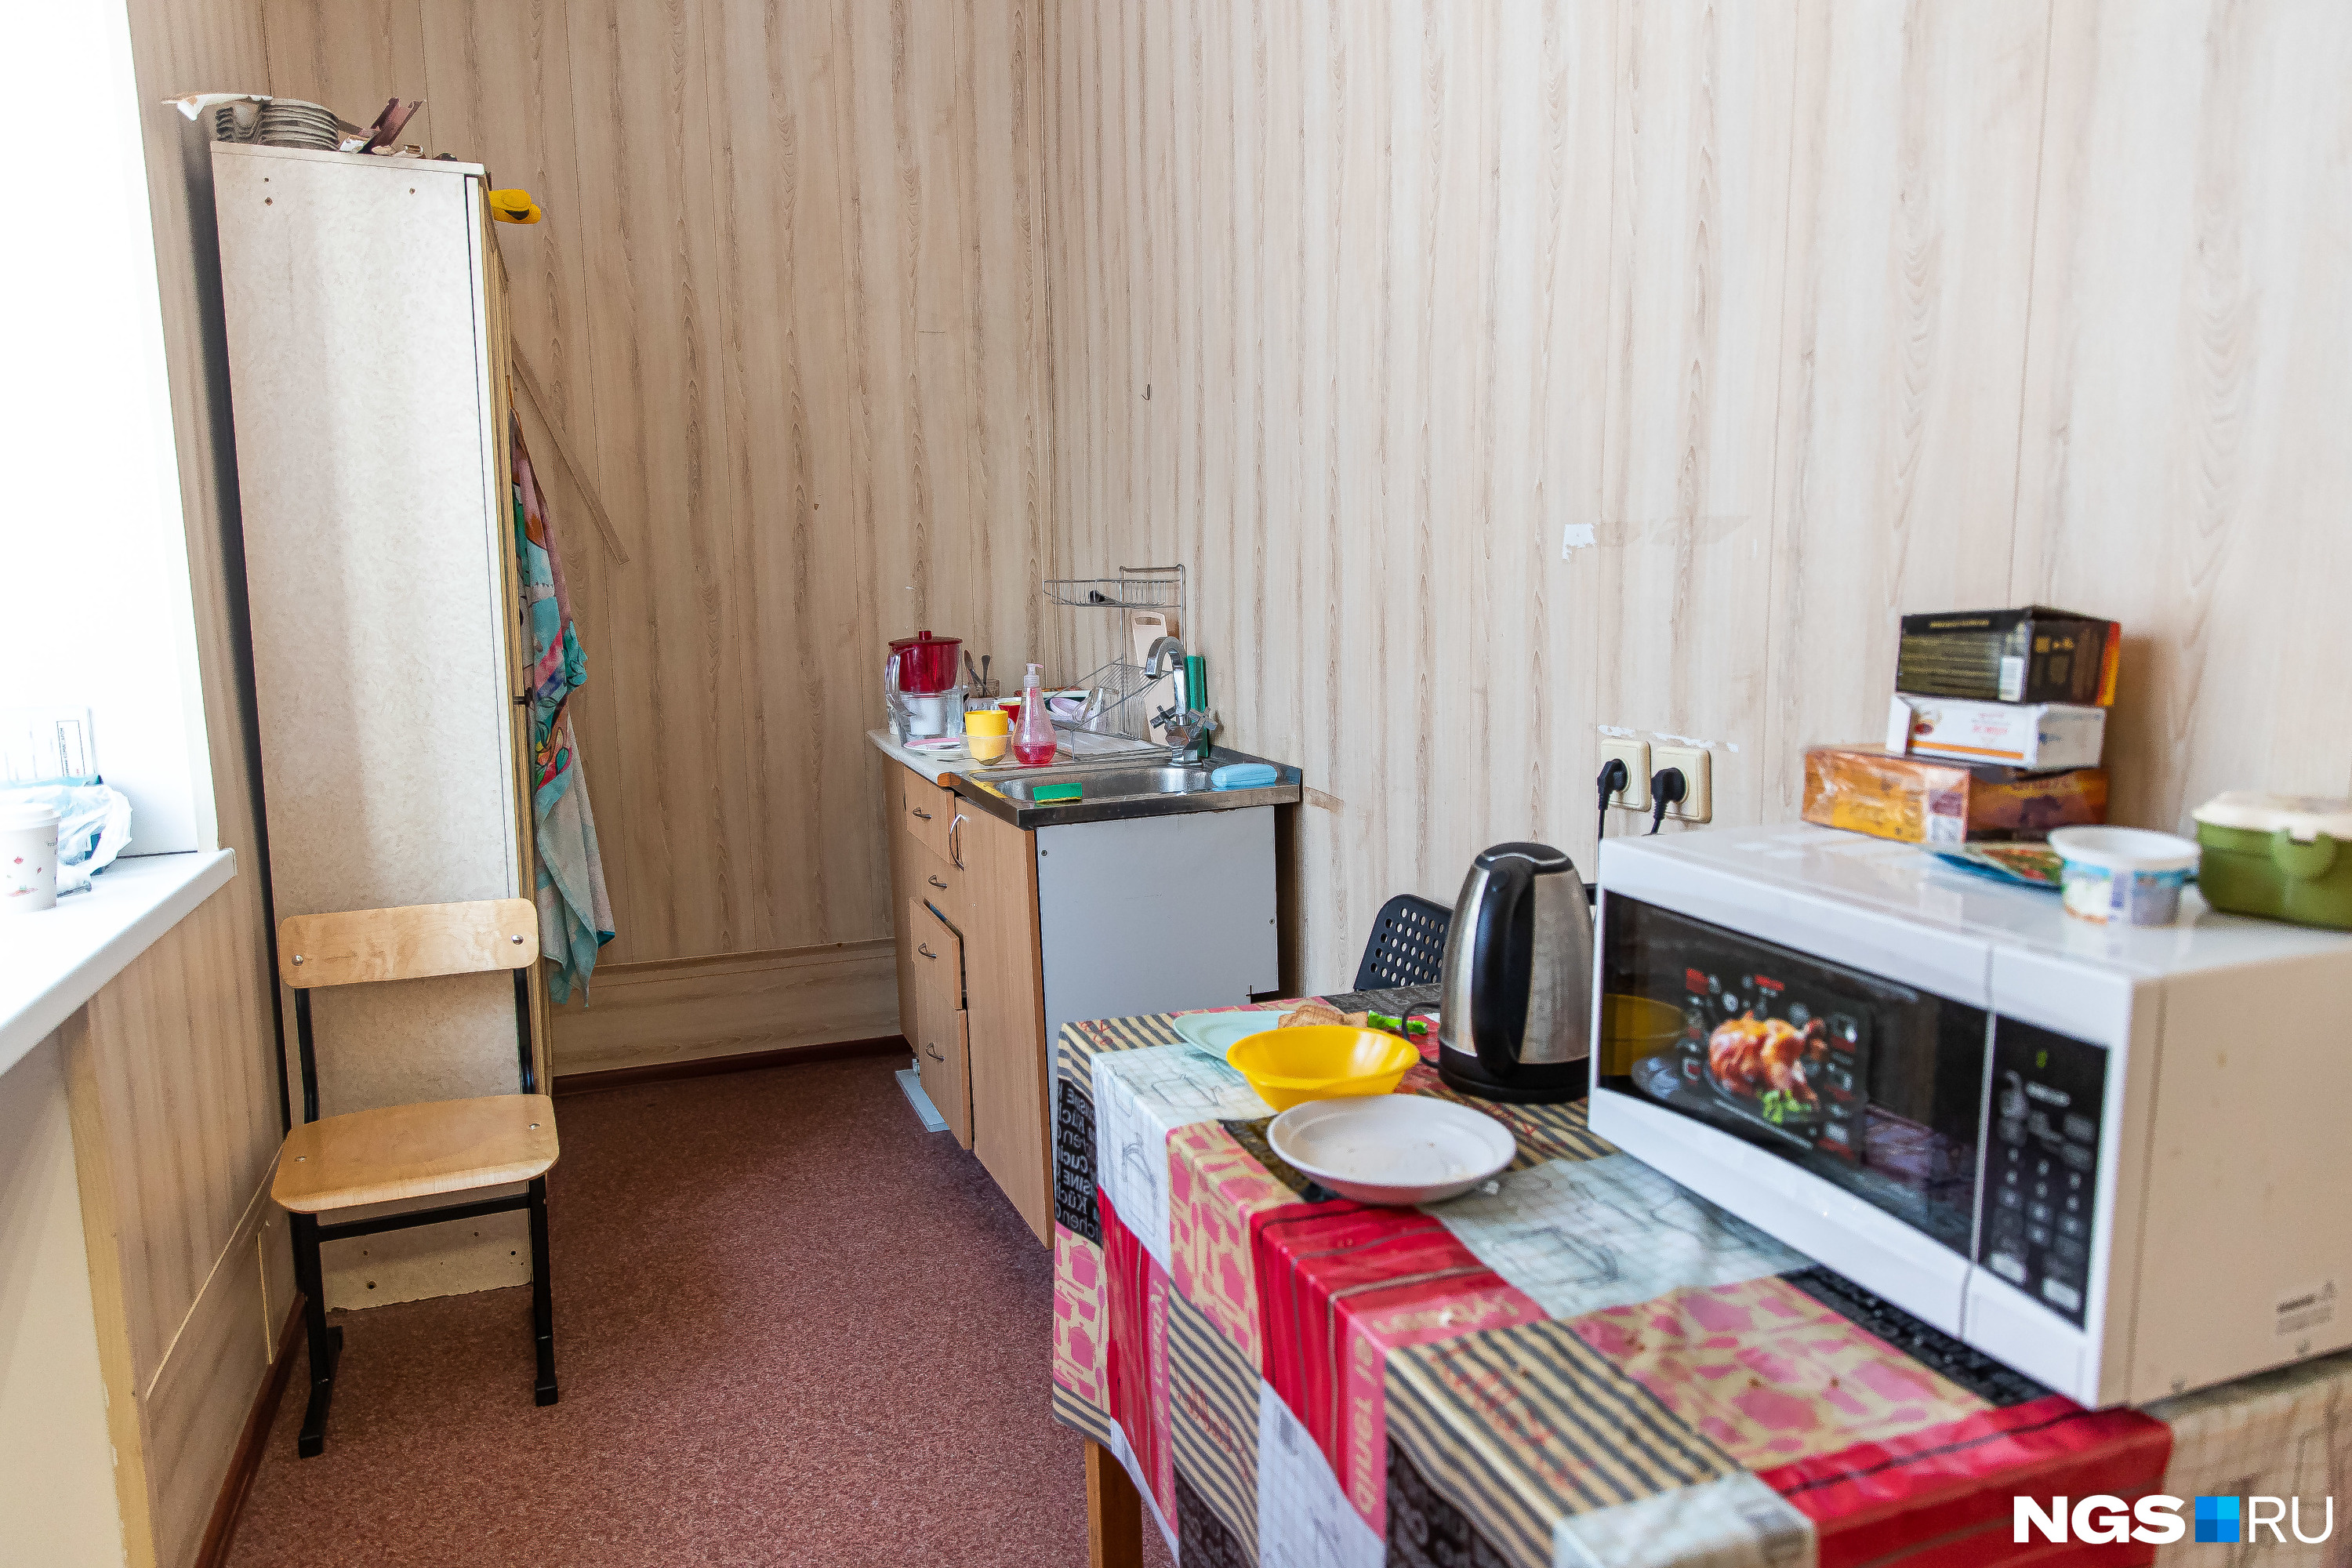 Кухня, где дети регулярно скрываются от учителей на переменах и перекусывают